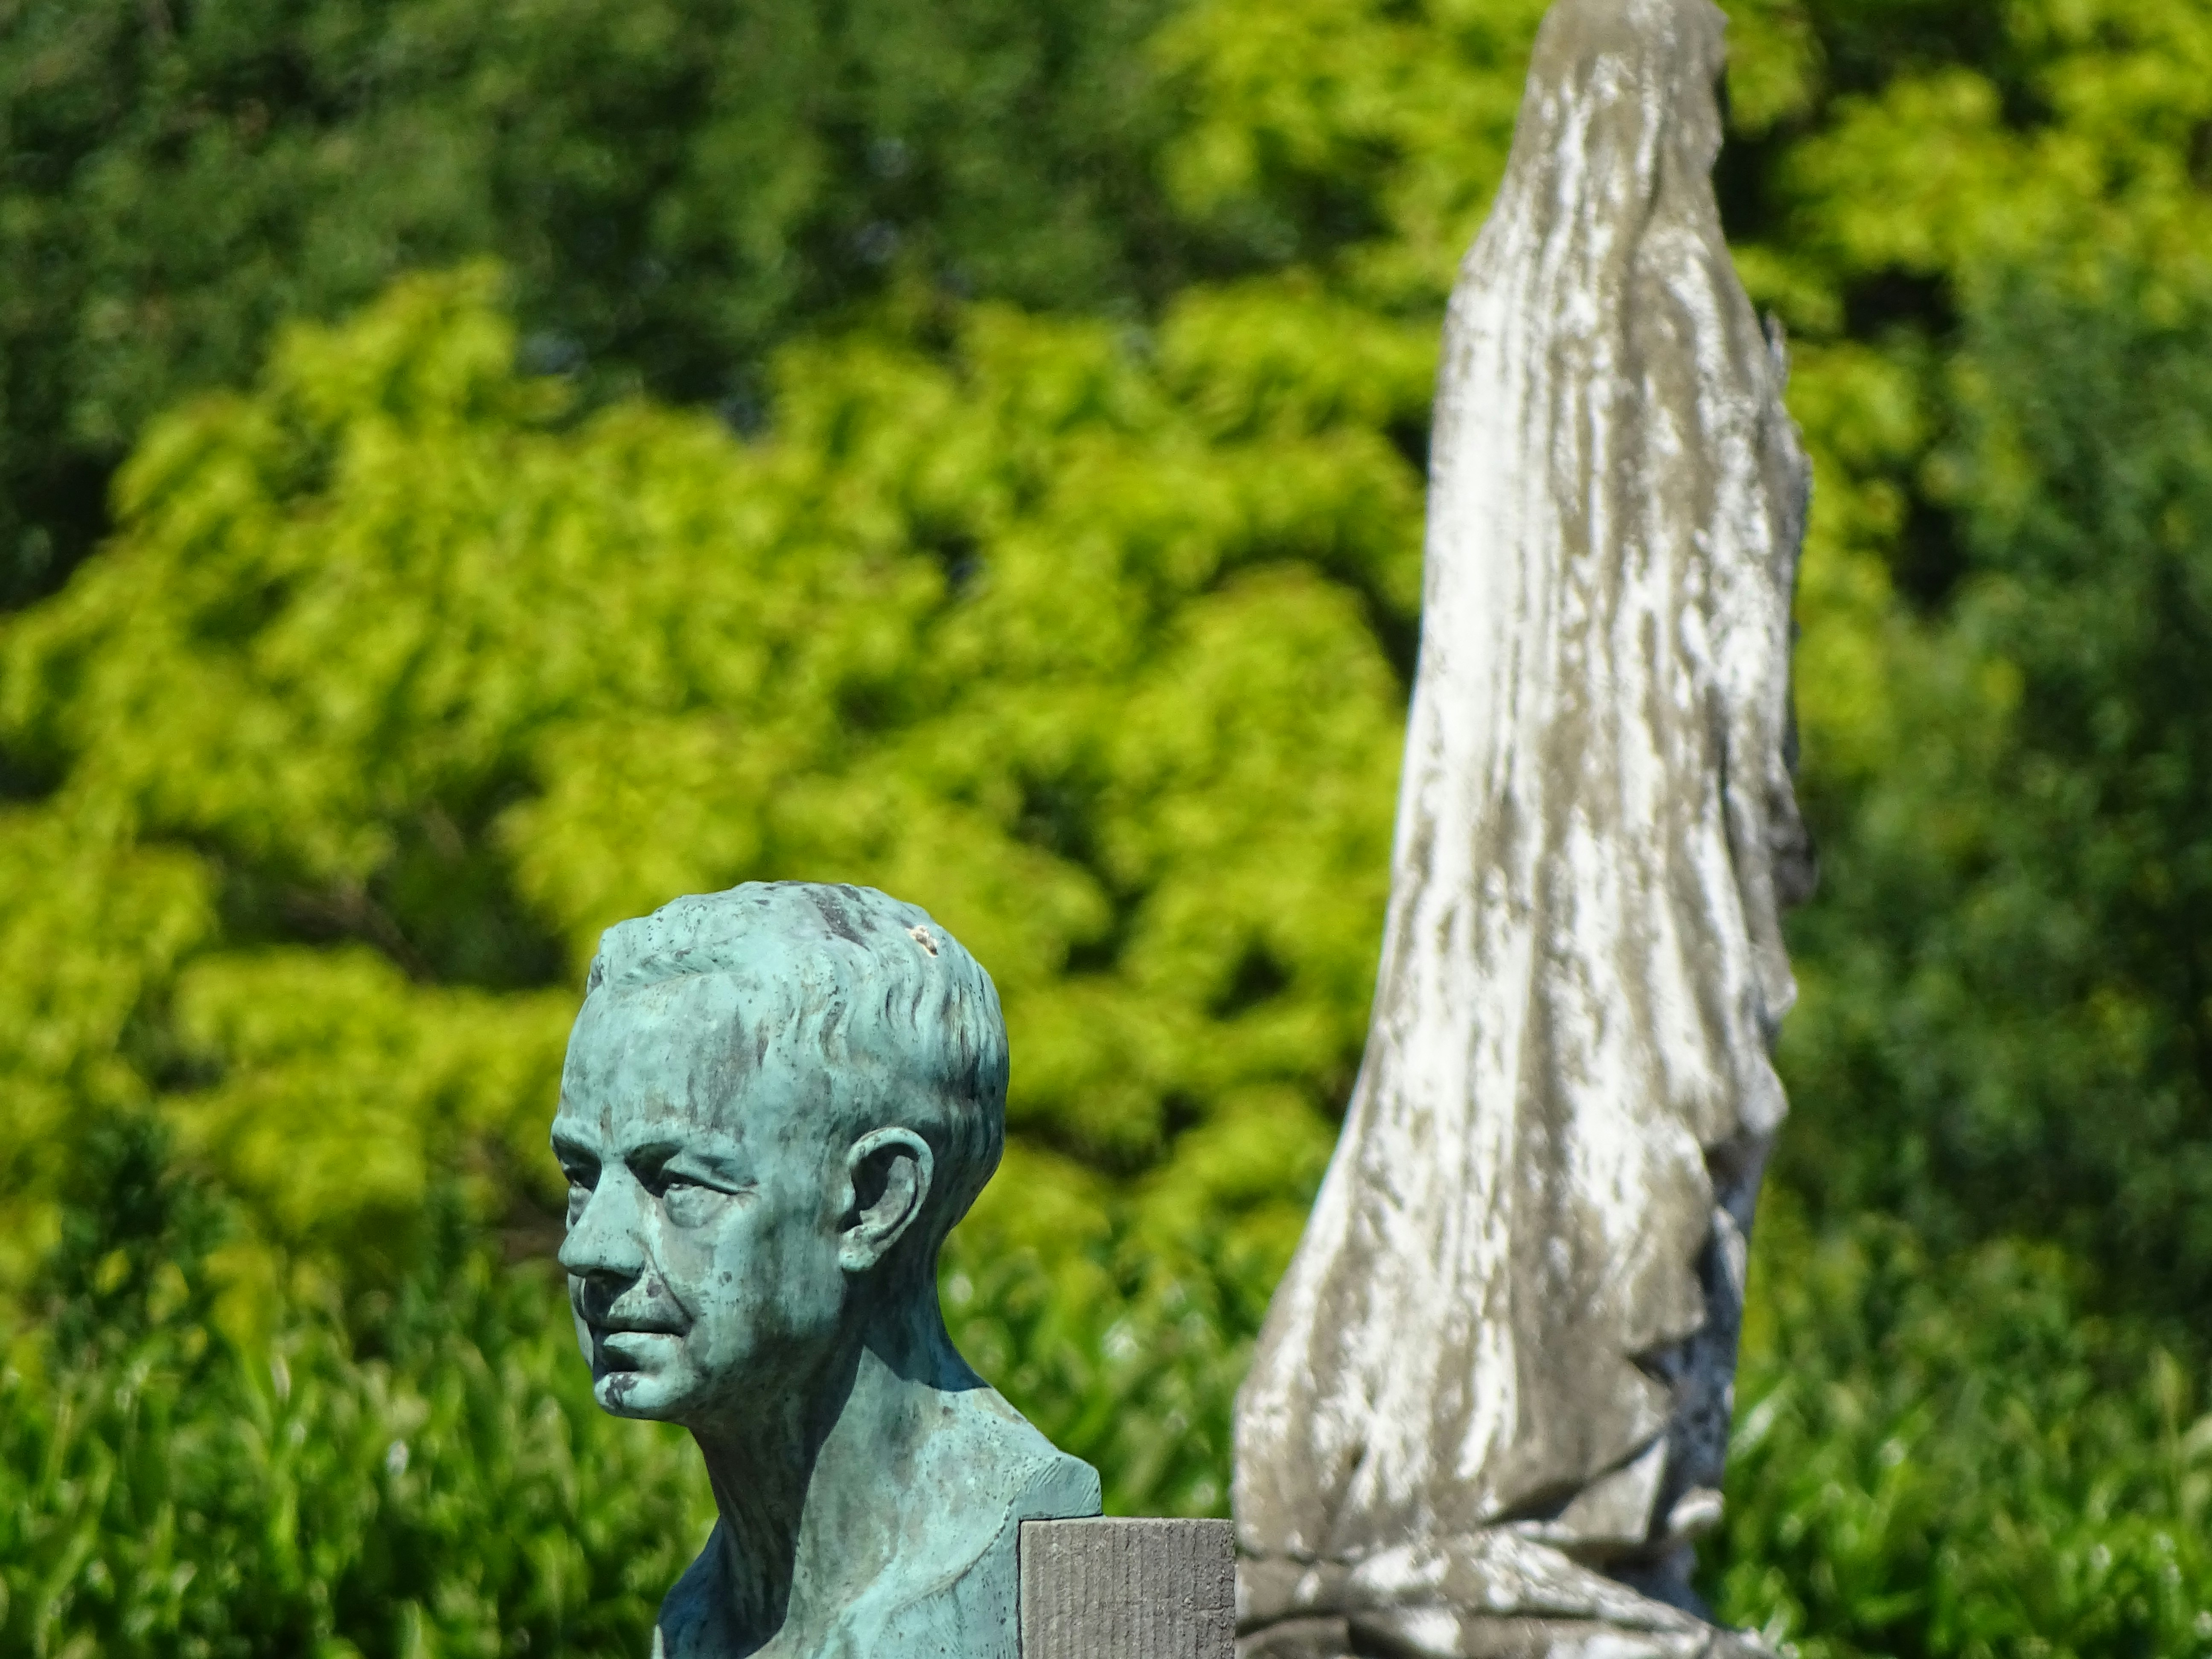 Statue at the cimetery - Statue auf dem Friedhof - Standbeeld op het kerkhof - Statue dans le cimetière